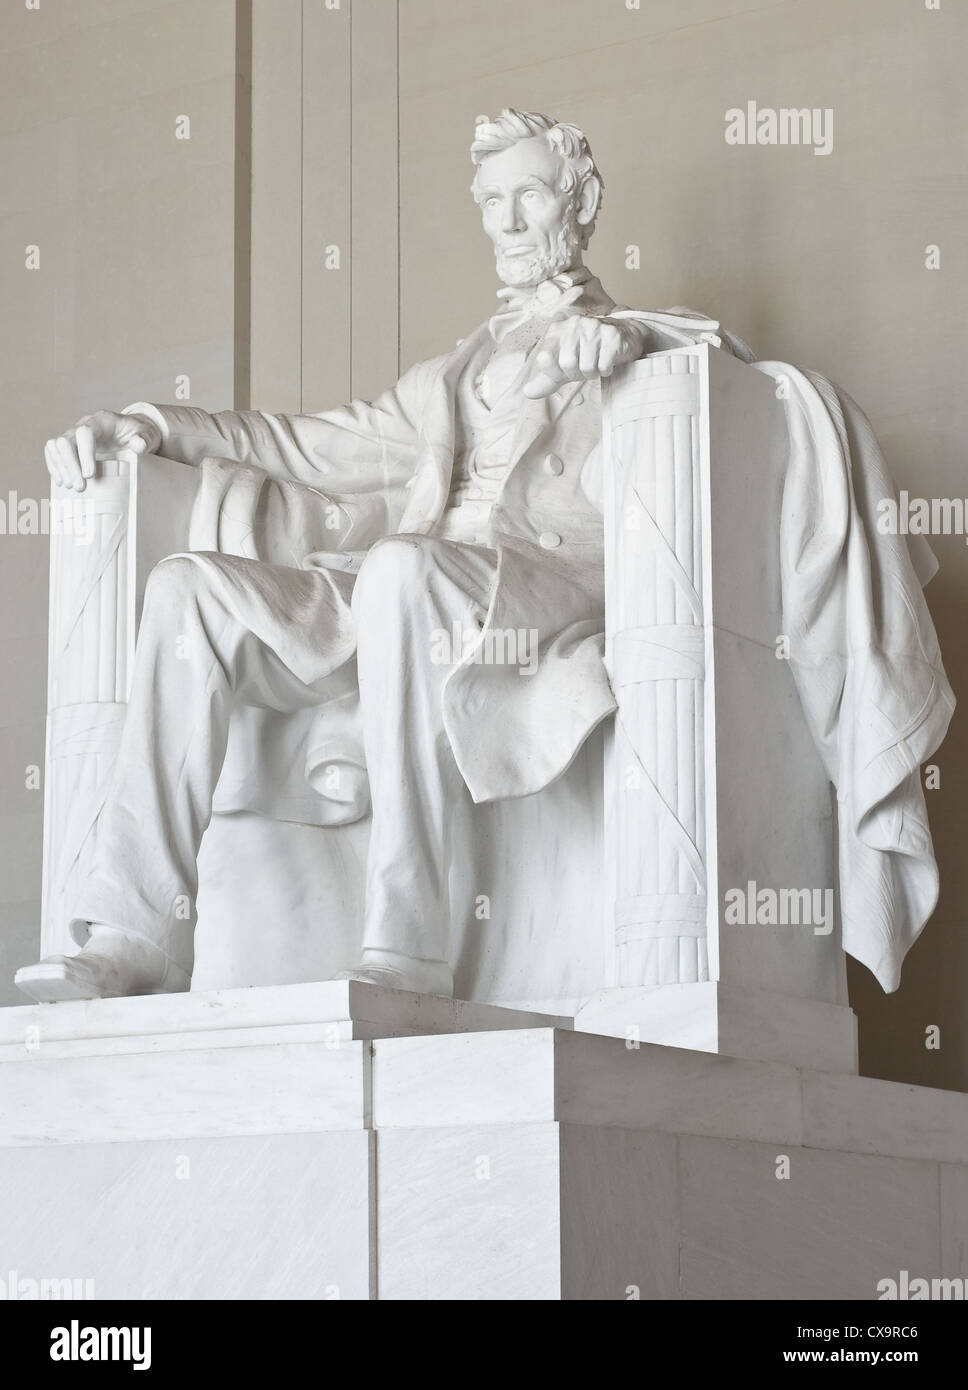 Abraham Lincoln Memorial à Washington DC Banque D'Images